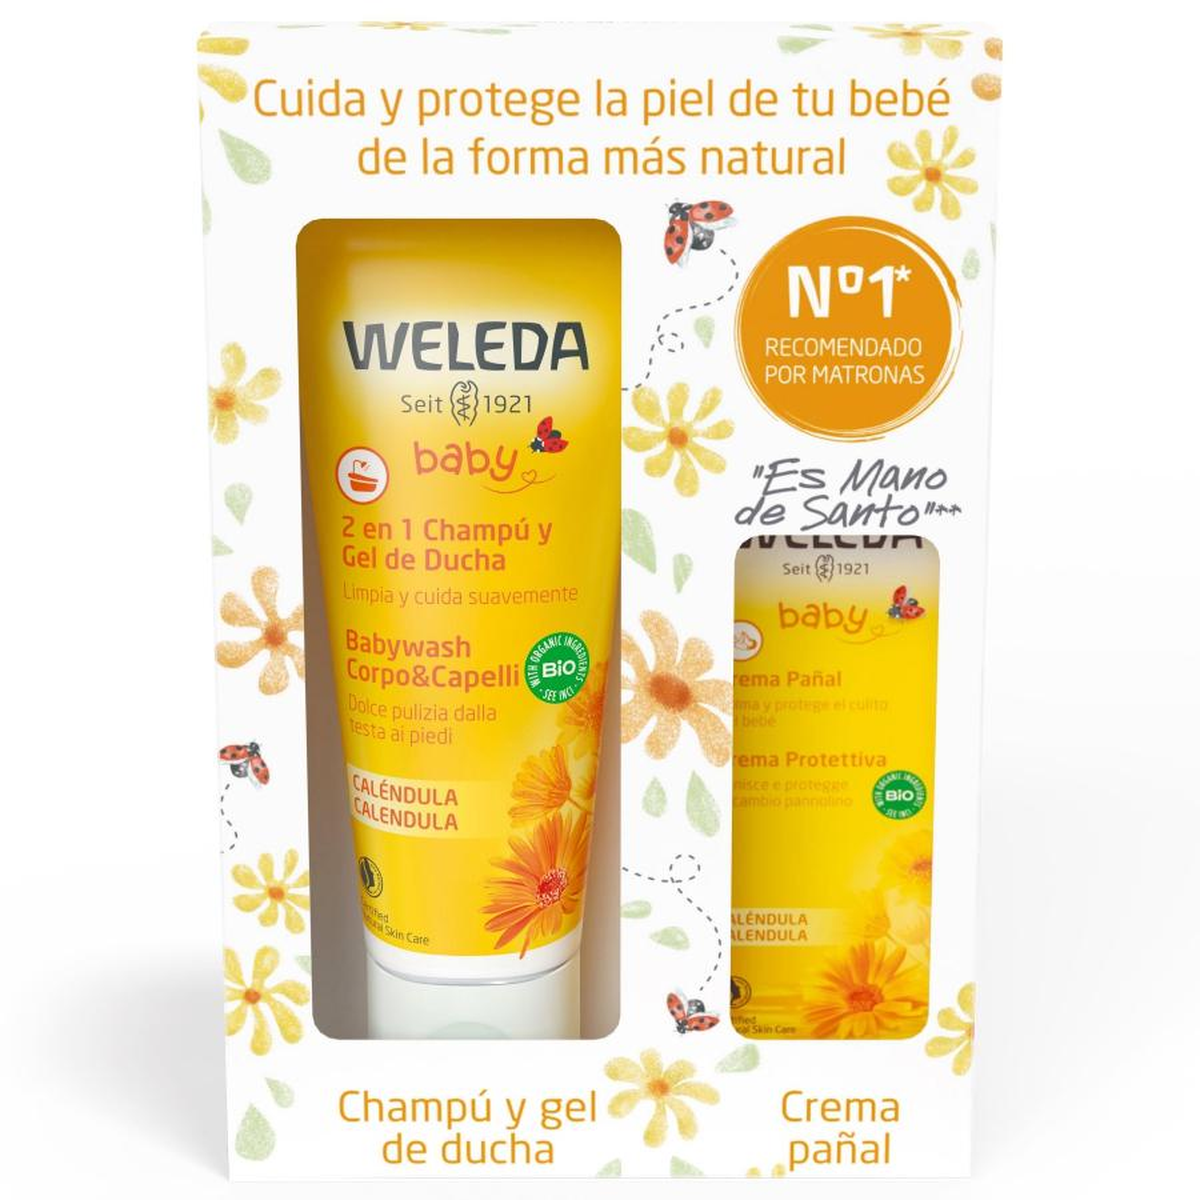 Aceite de caléndula para bebés, 200 ml, Weleda - Weleda